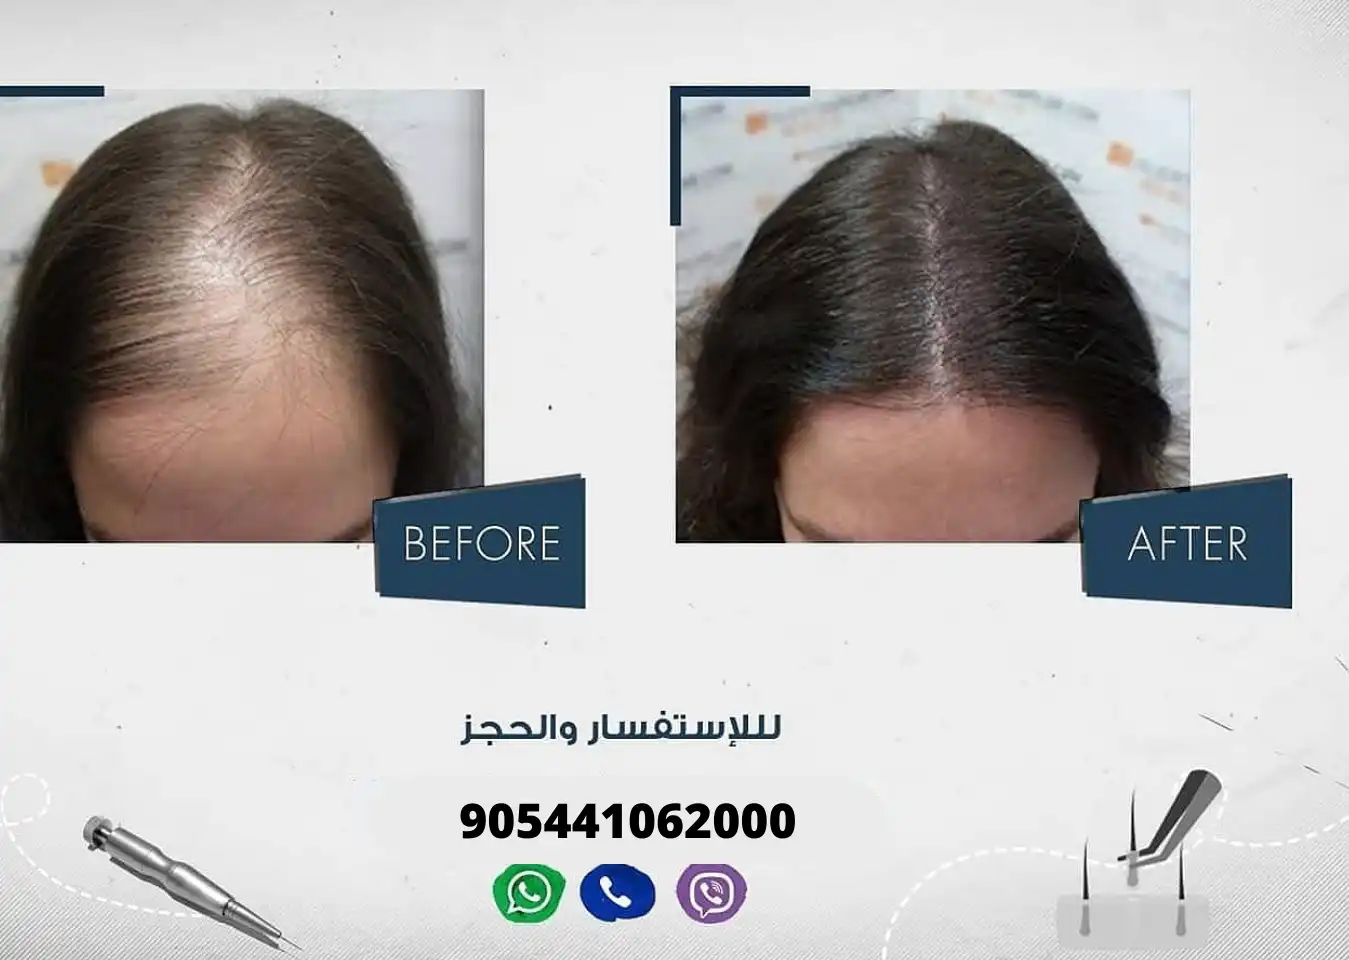 سيدة تعاني من الصلع الأمامي قبل وبعد إجراء عملية زراعة الشعر في مركز آرت لزراعة الشعر